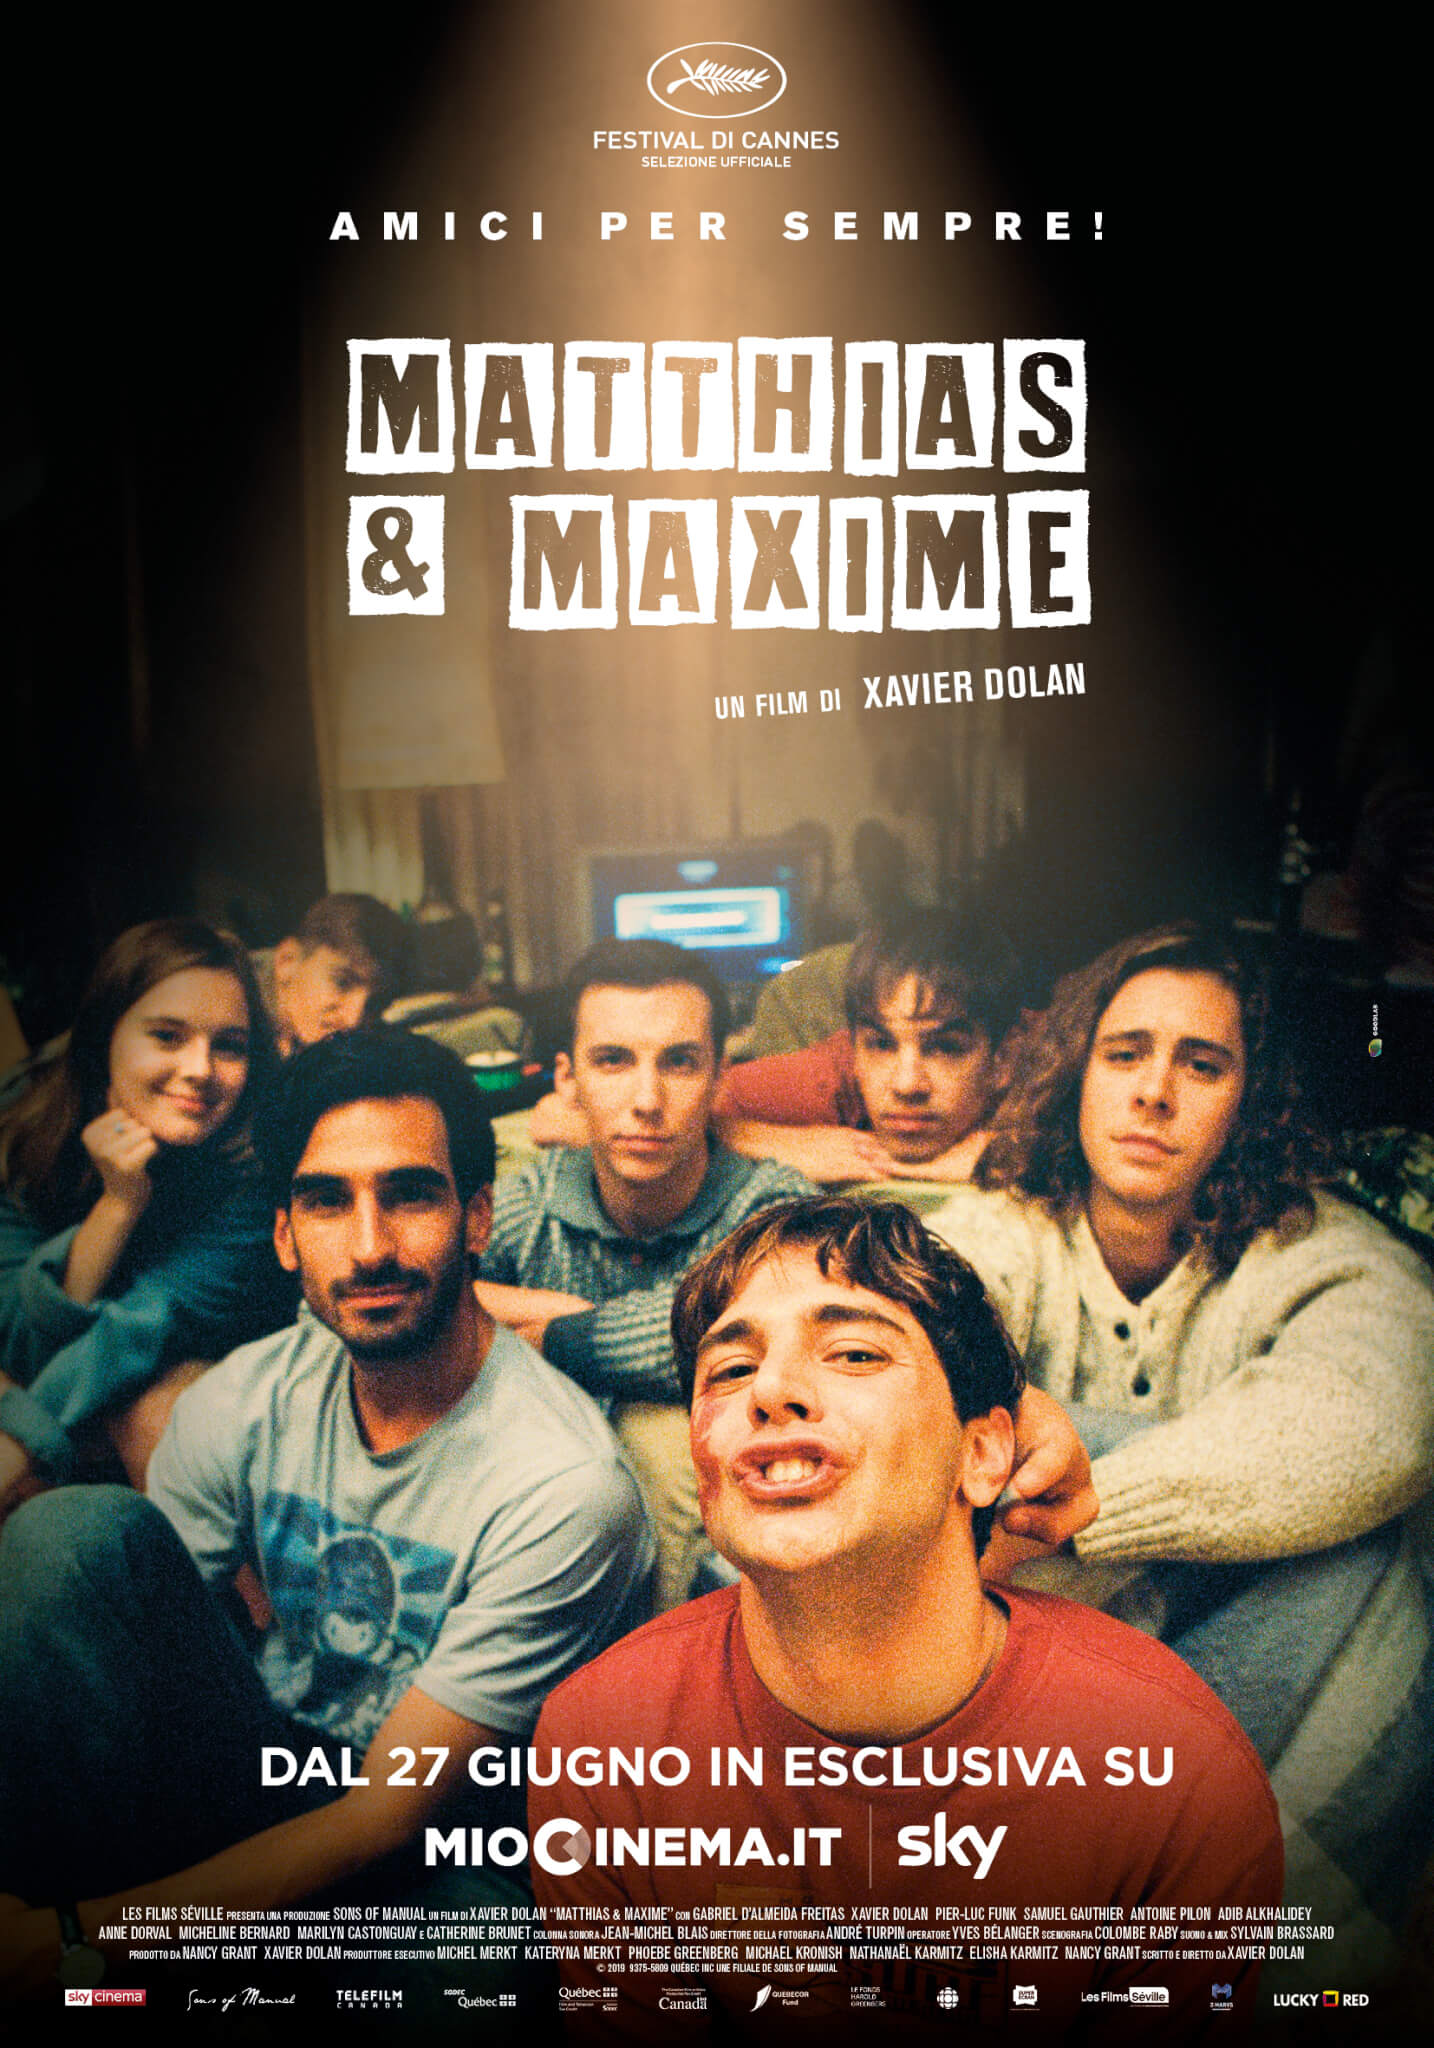 Matthias e Maxime di Xavier Dolan dal 27 giugno on line, trailer italiano e poster - Poster Matthias Maxime1 1 - Gay.it